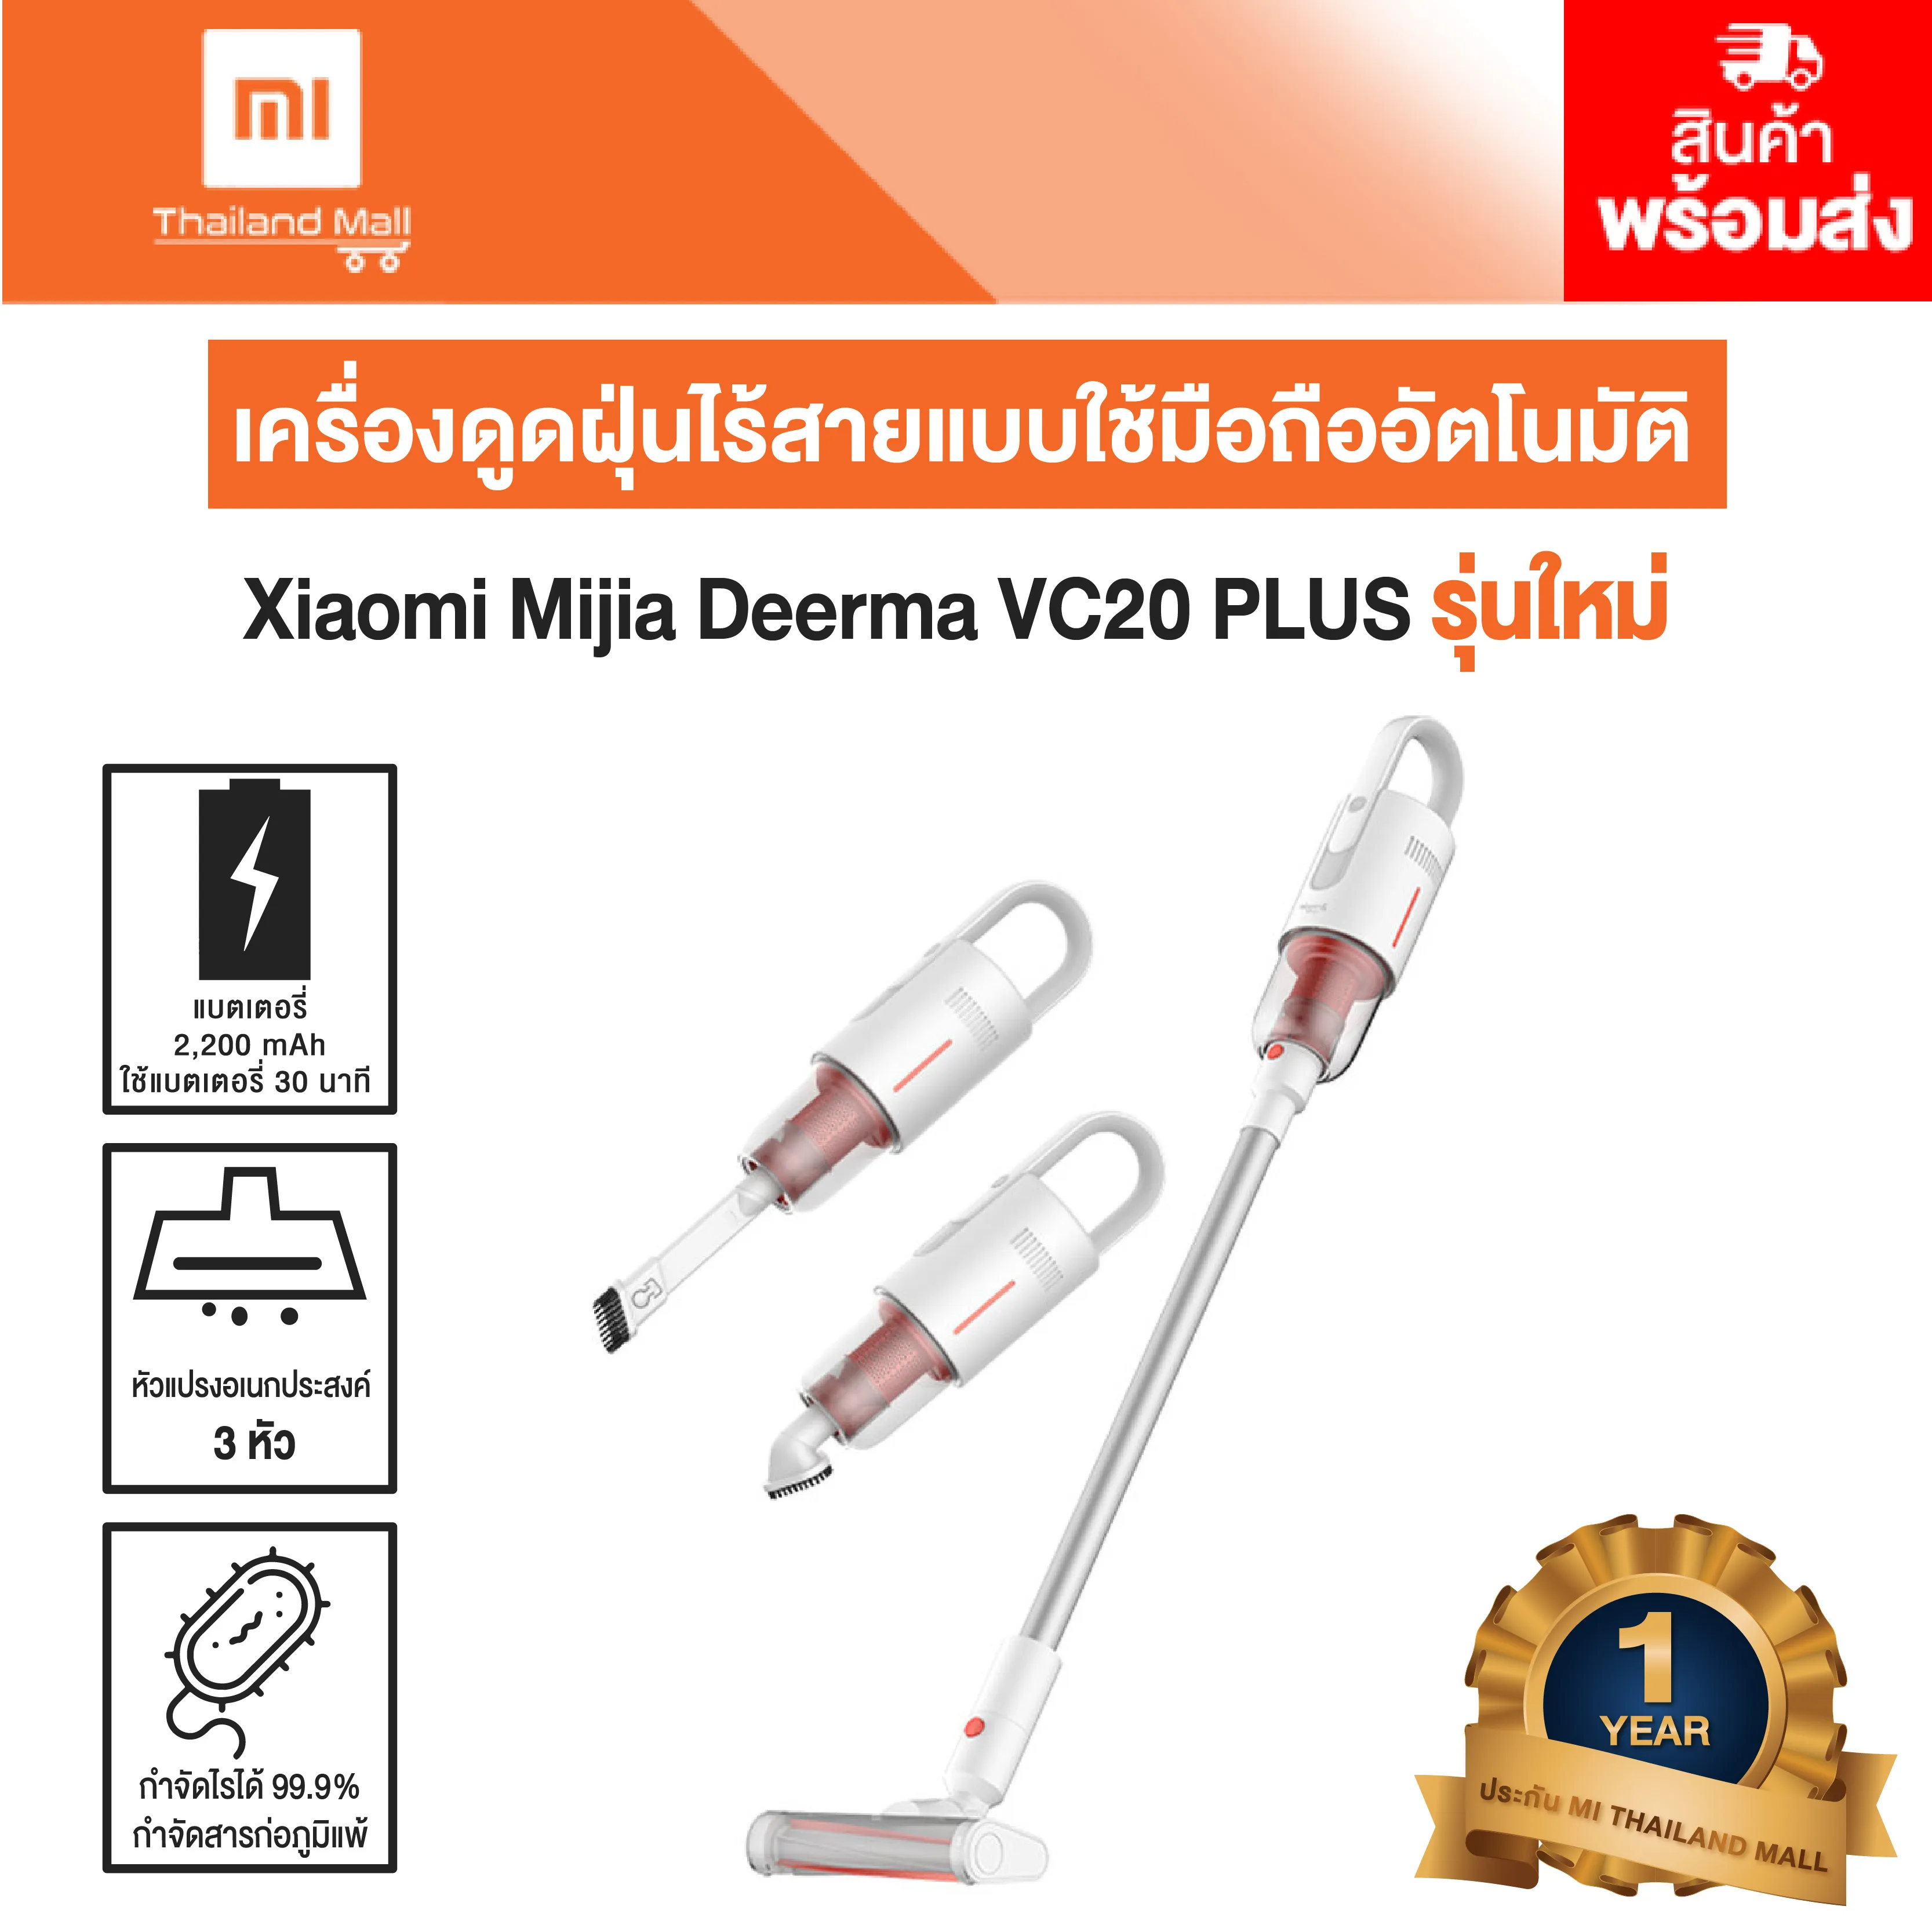 เครื่องดูดฝุ่น ไร้สาย Xiaomi Mijia Deerma VC20 PLUS รุ่นใหม่ -Global Version ประกันโดย Mi Thailand Mall 1 ปี